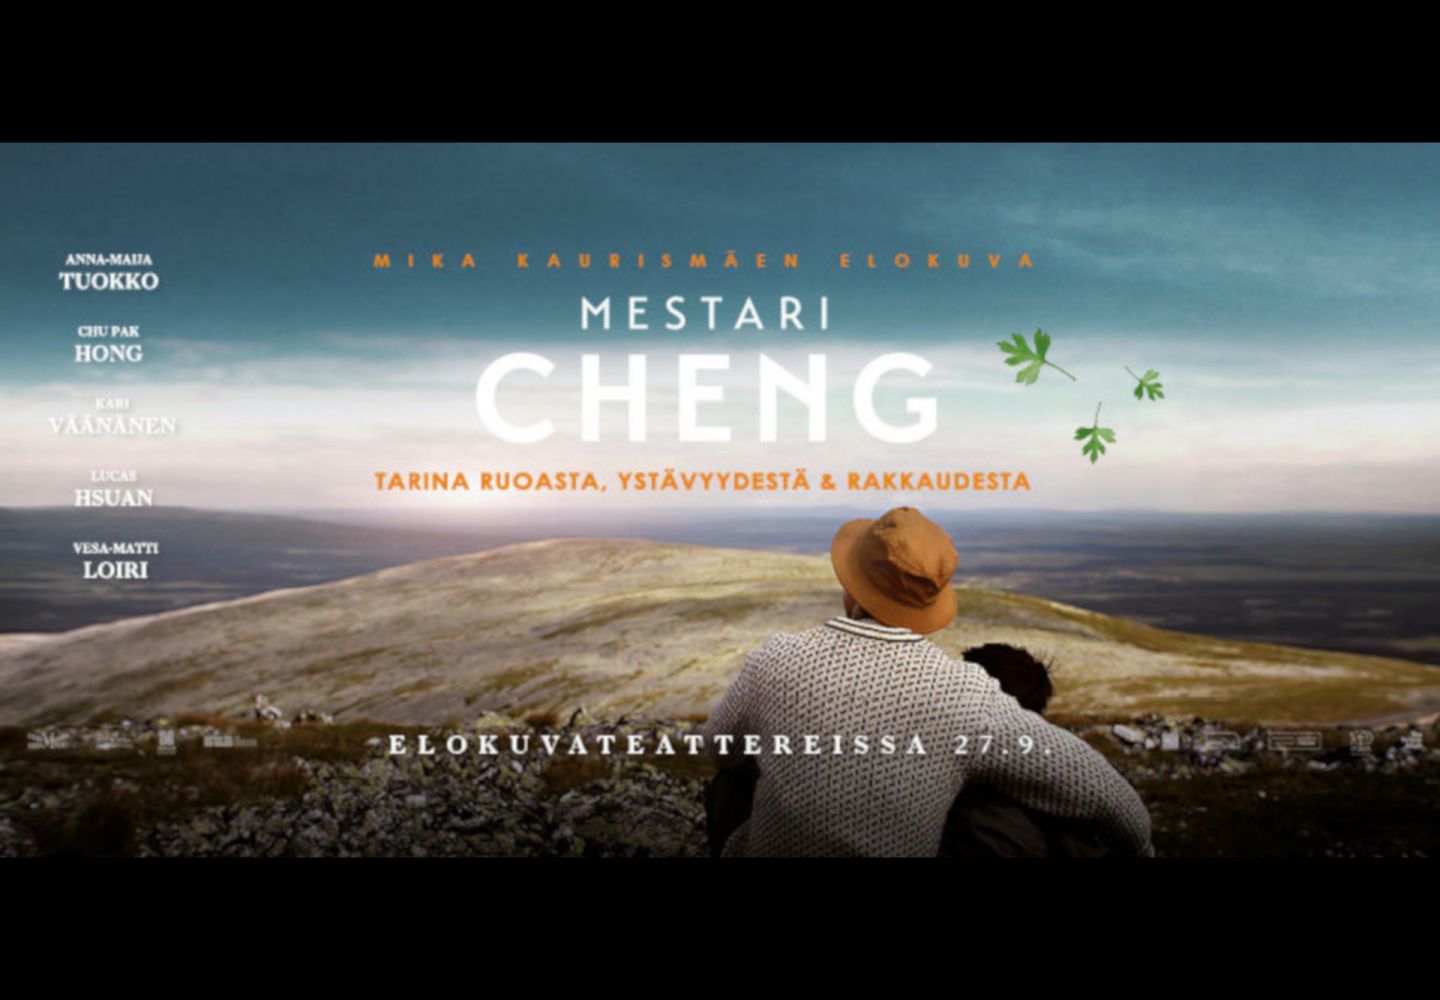 Master Cheng, filmed in Finnish Lapland